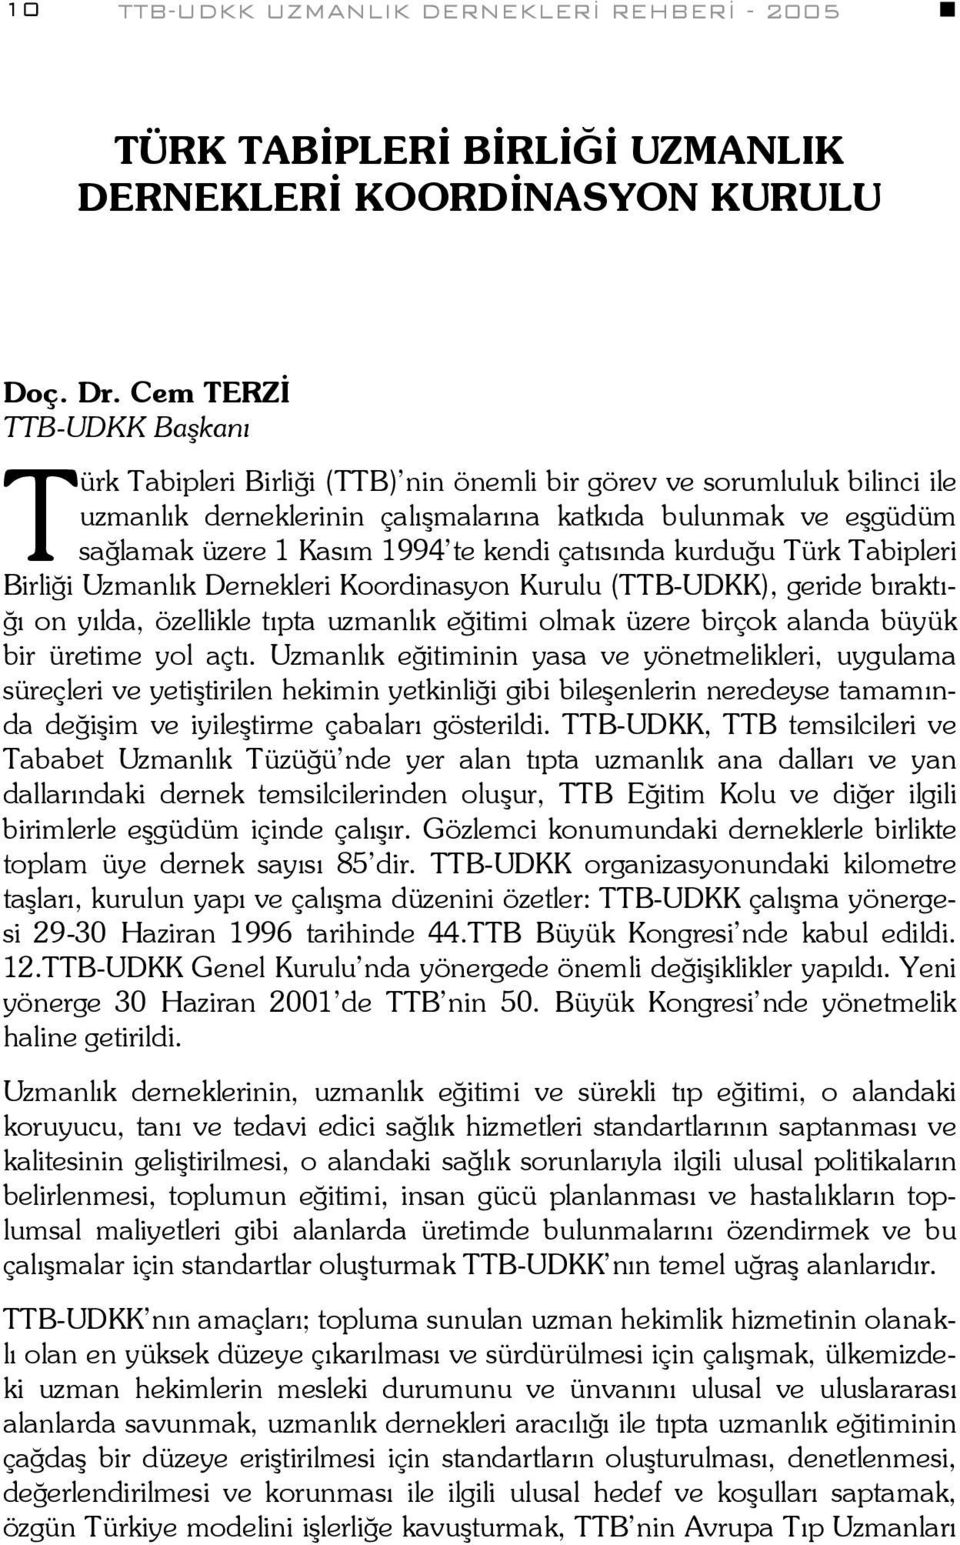 kendi çatısında kurduğu Türk Tabipleri Birliği Uzmanlık Dernekleri Koordinasyon Kurulu (TTB-UDKK), geride bıraktığı on yılda, özellikle tıpta uzmanlık eğitimi olmak üzere birçok alanda büyük bir